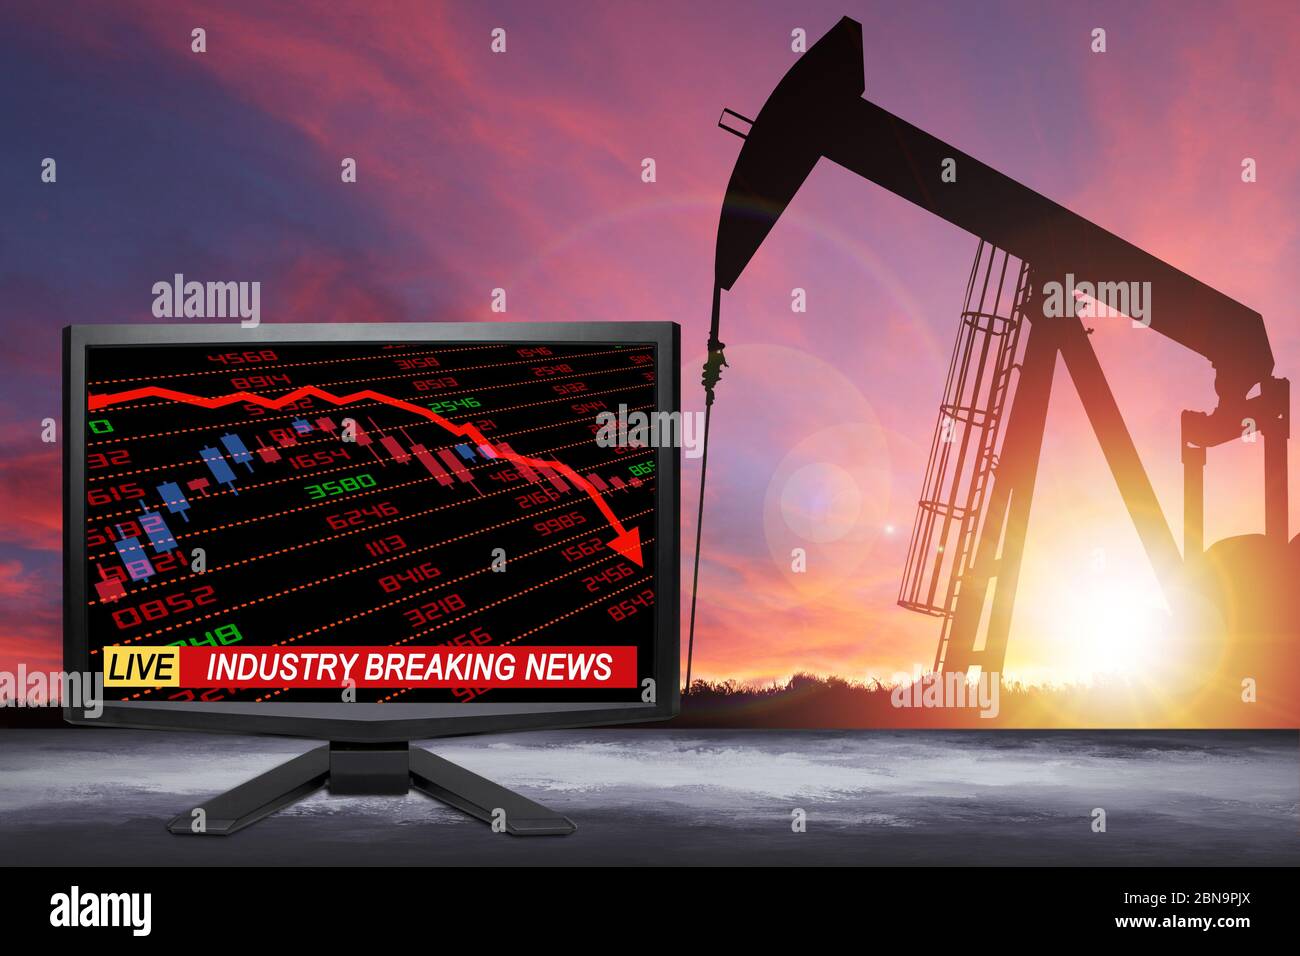 Live-Öl-Industrie Nachrichten auf TV-Bildschirm mit Aktien und Finanzindikatoren zeigen energiebezogene Industrie in der Krise durch Covid-19 Coronavirus Stockfoto